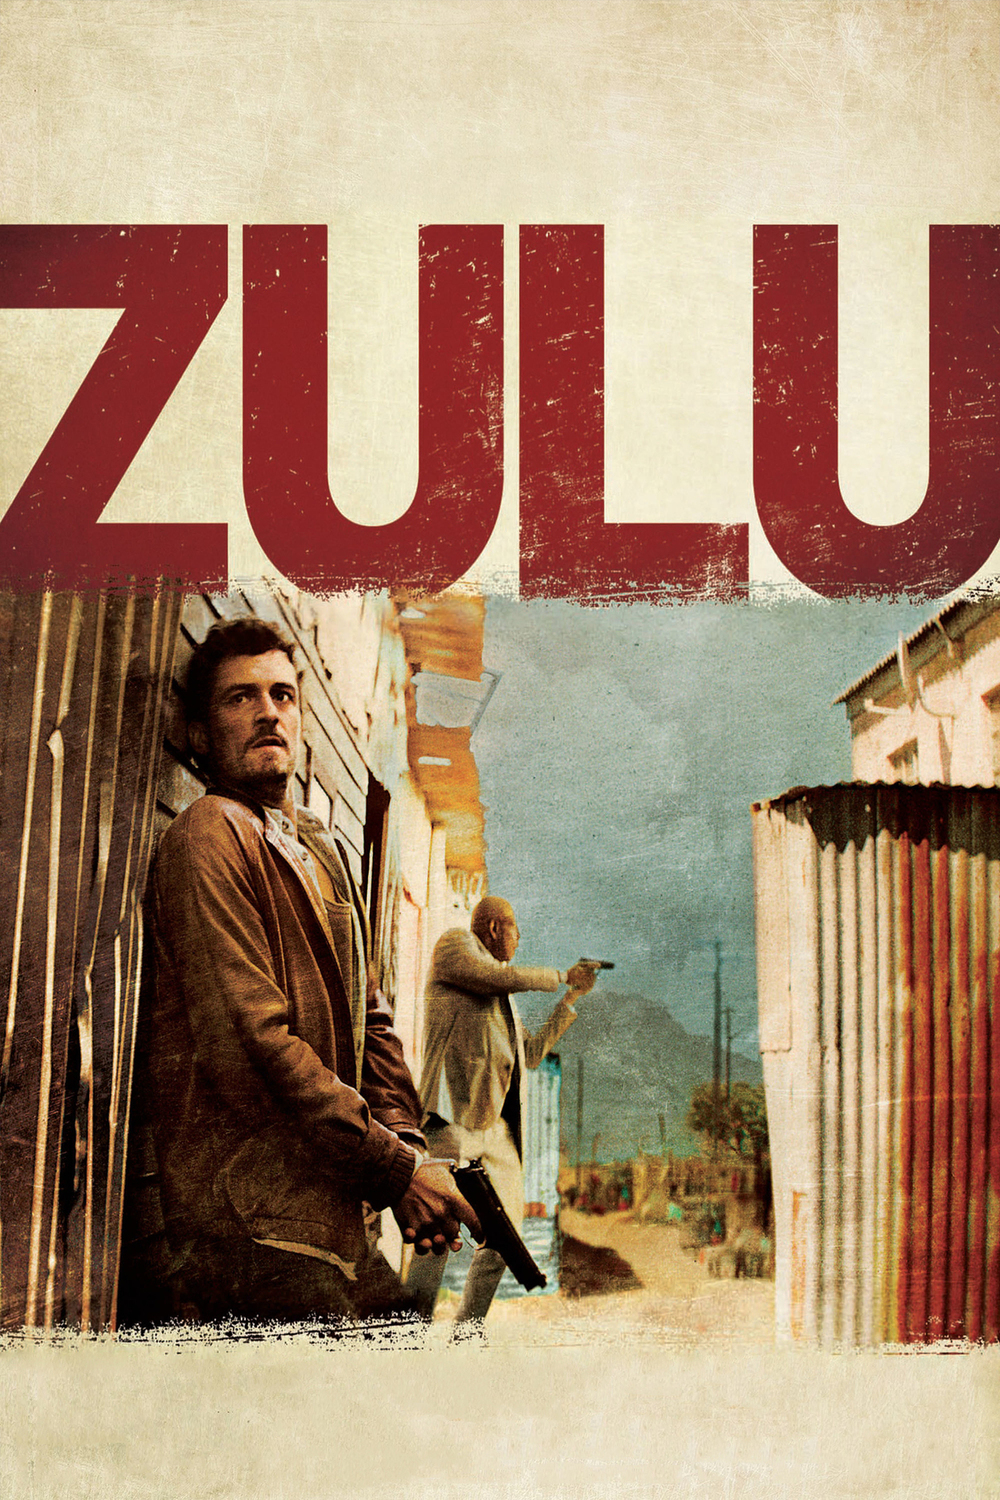 Zulu | Fandíme filmu